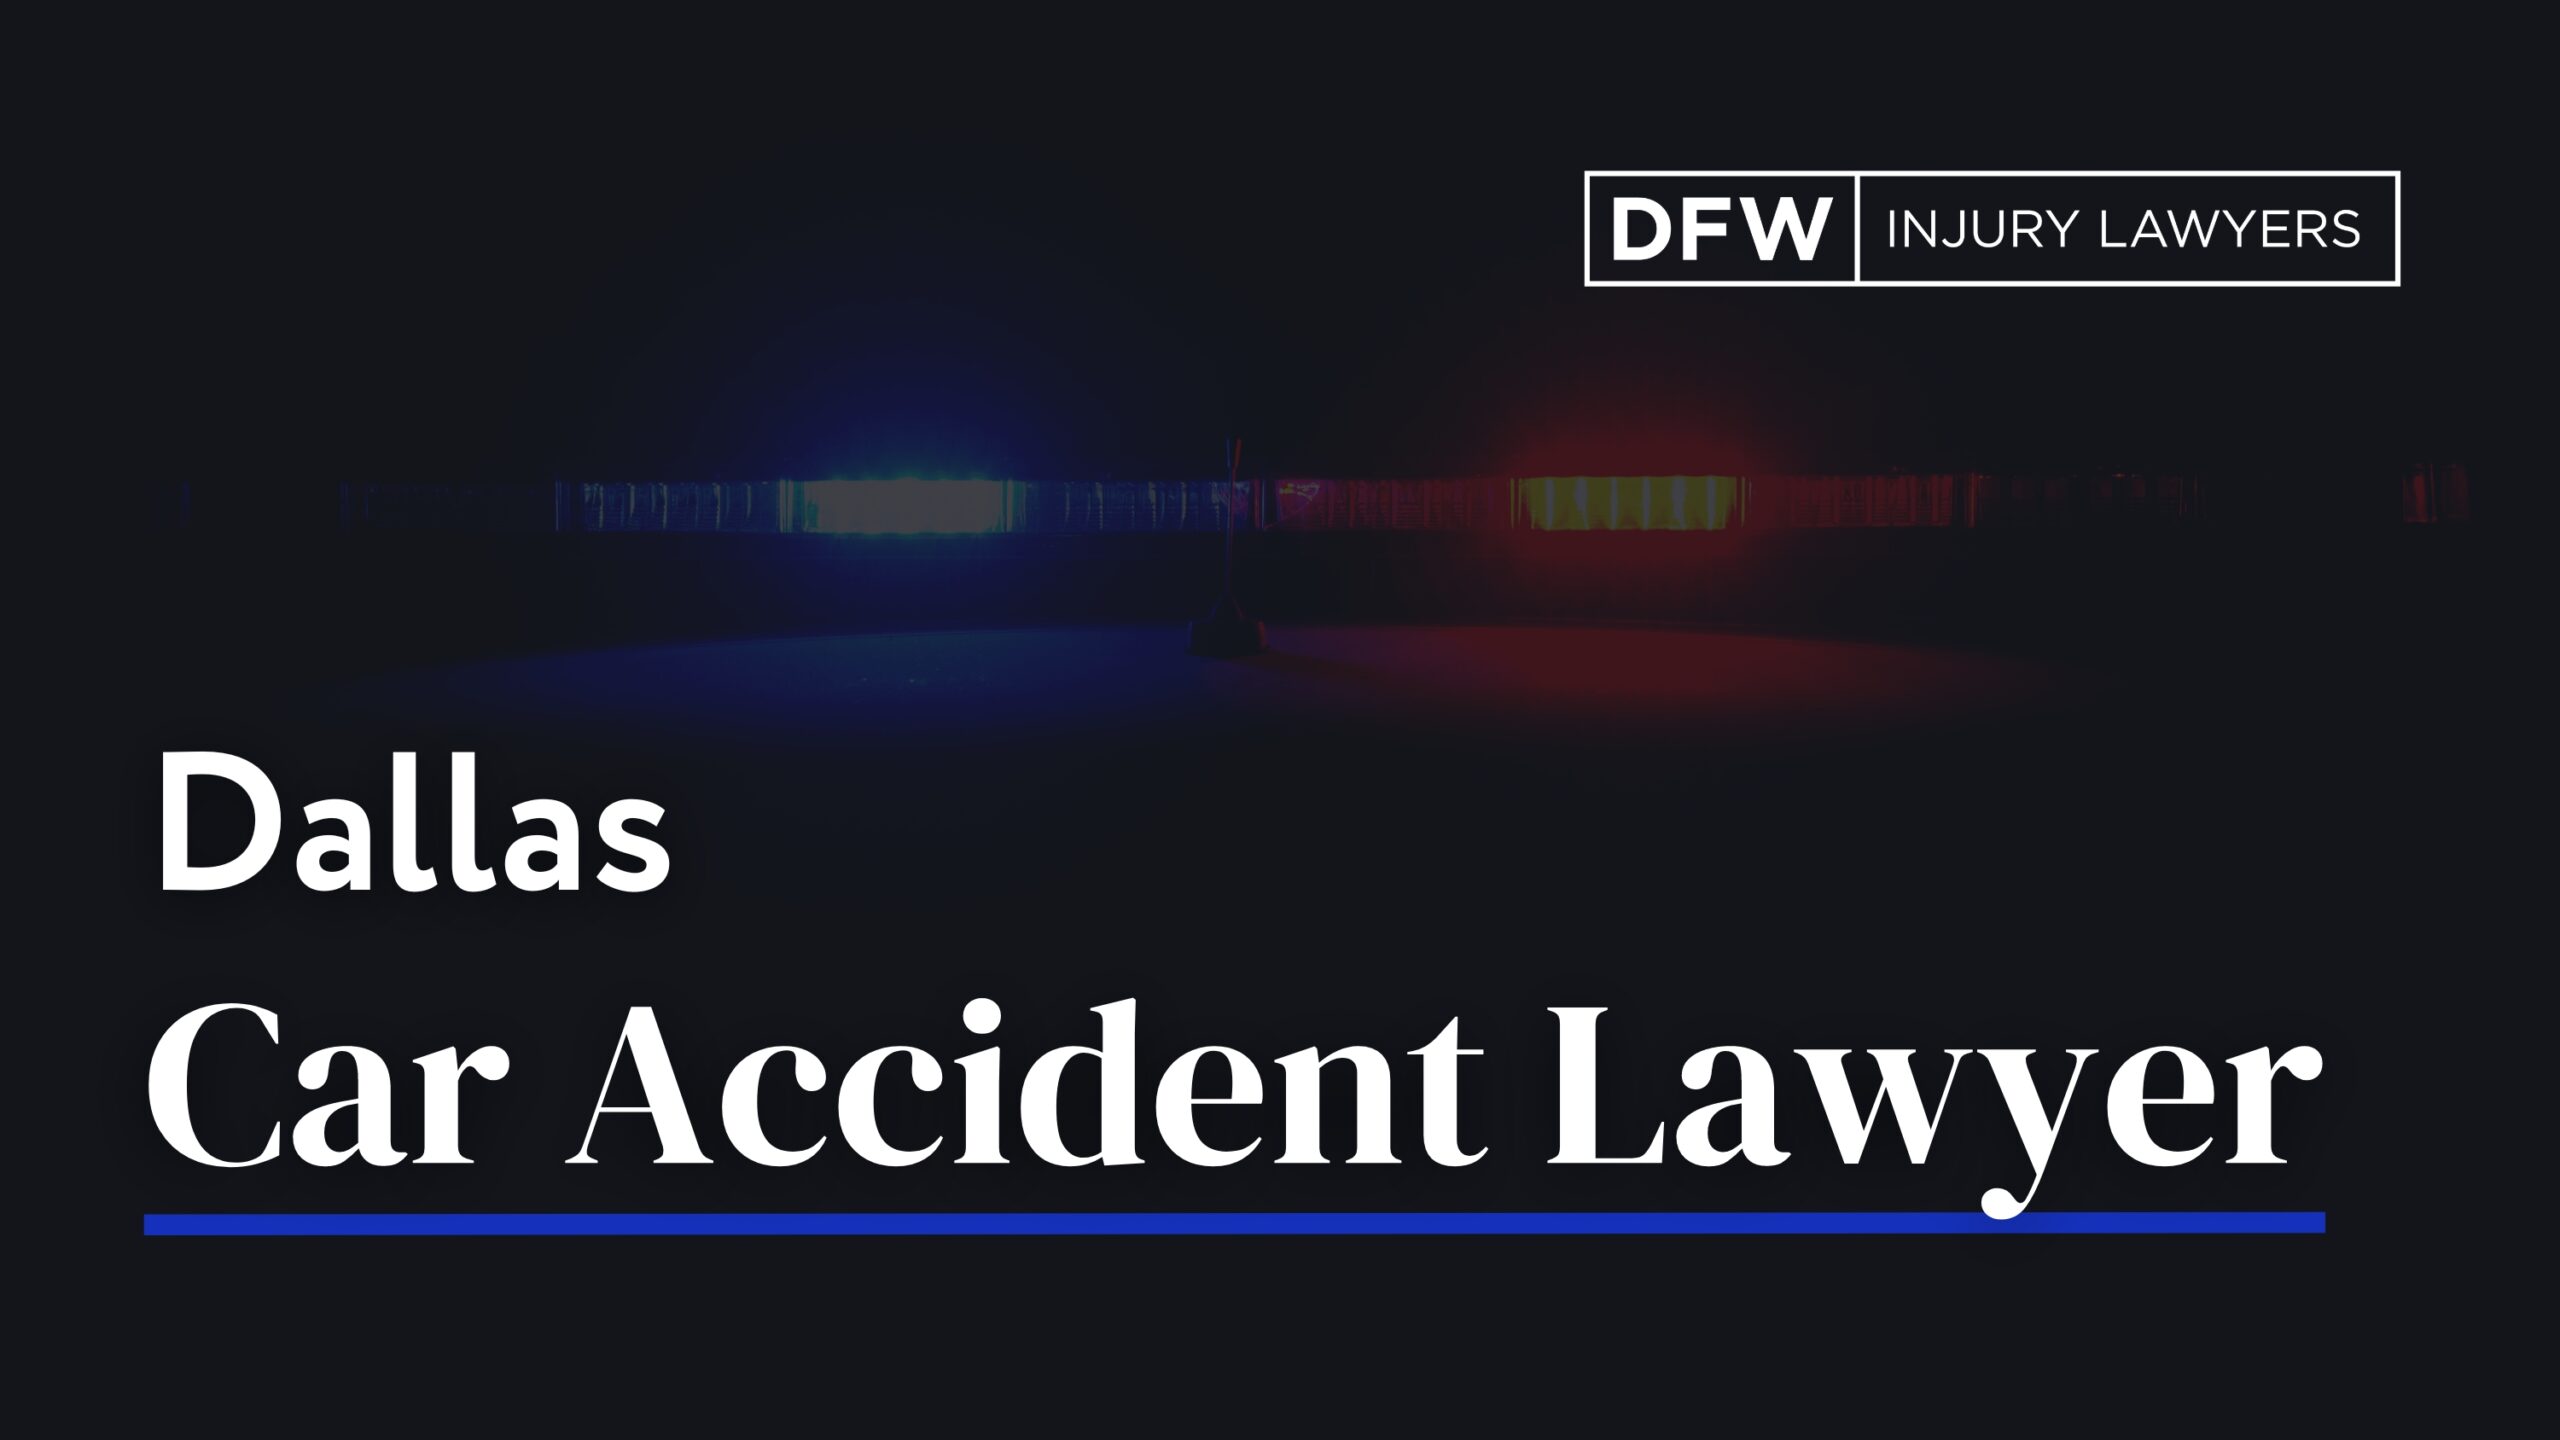 Dallas Car Accident Lawyer - DFW